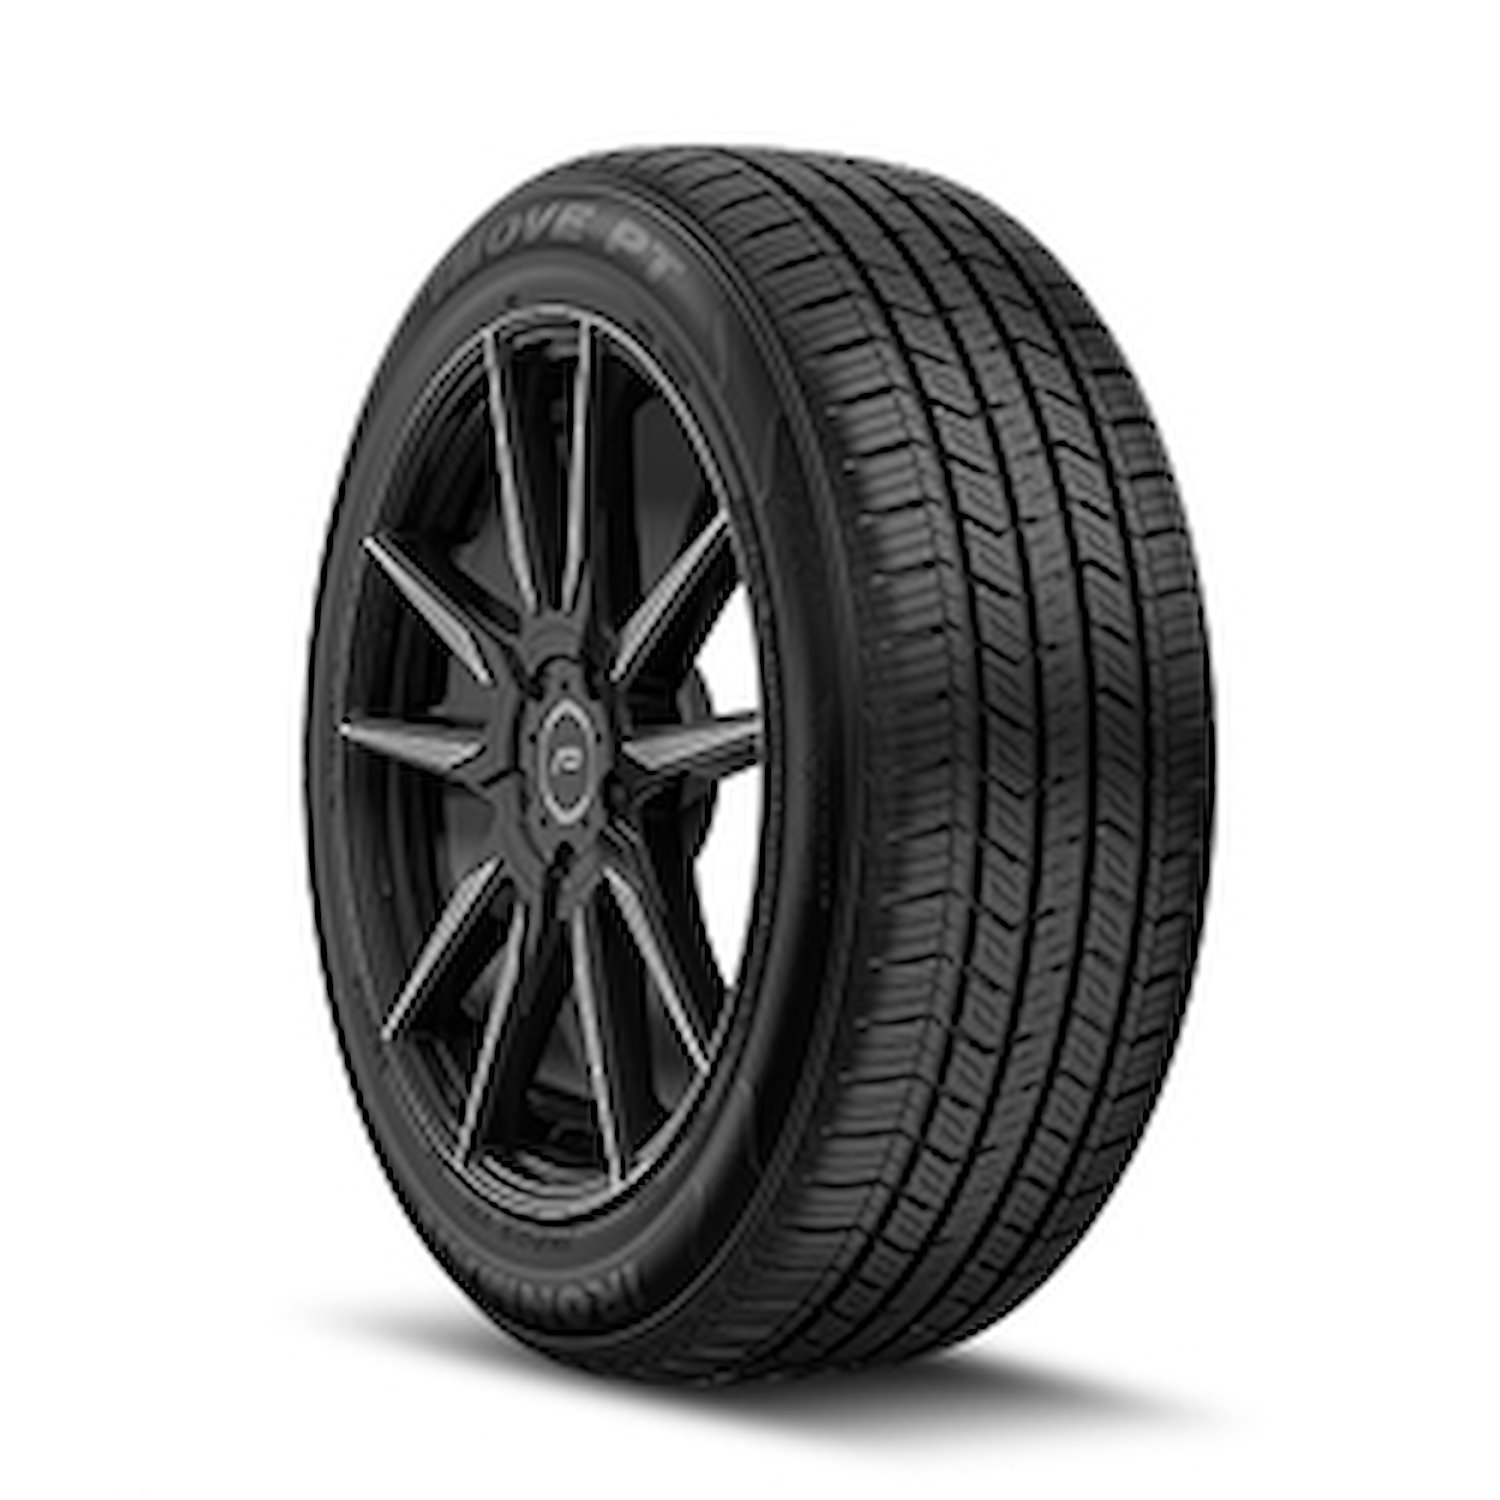 98445.1 iMOVE PT Tire, 195/70R14, 91T